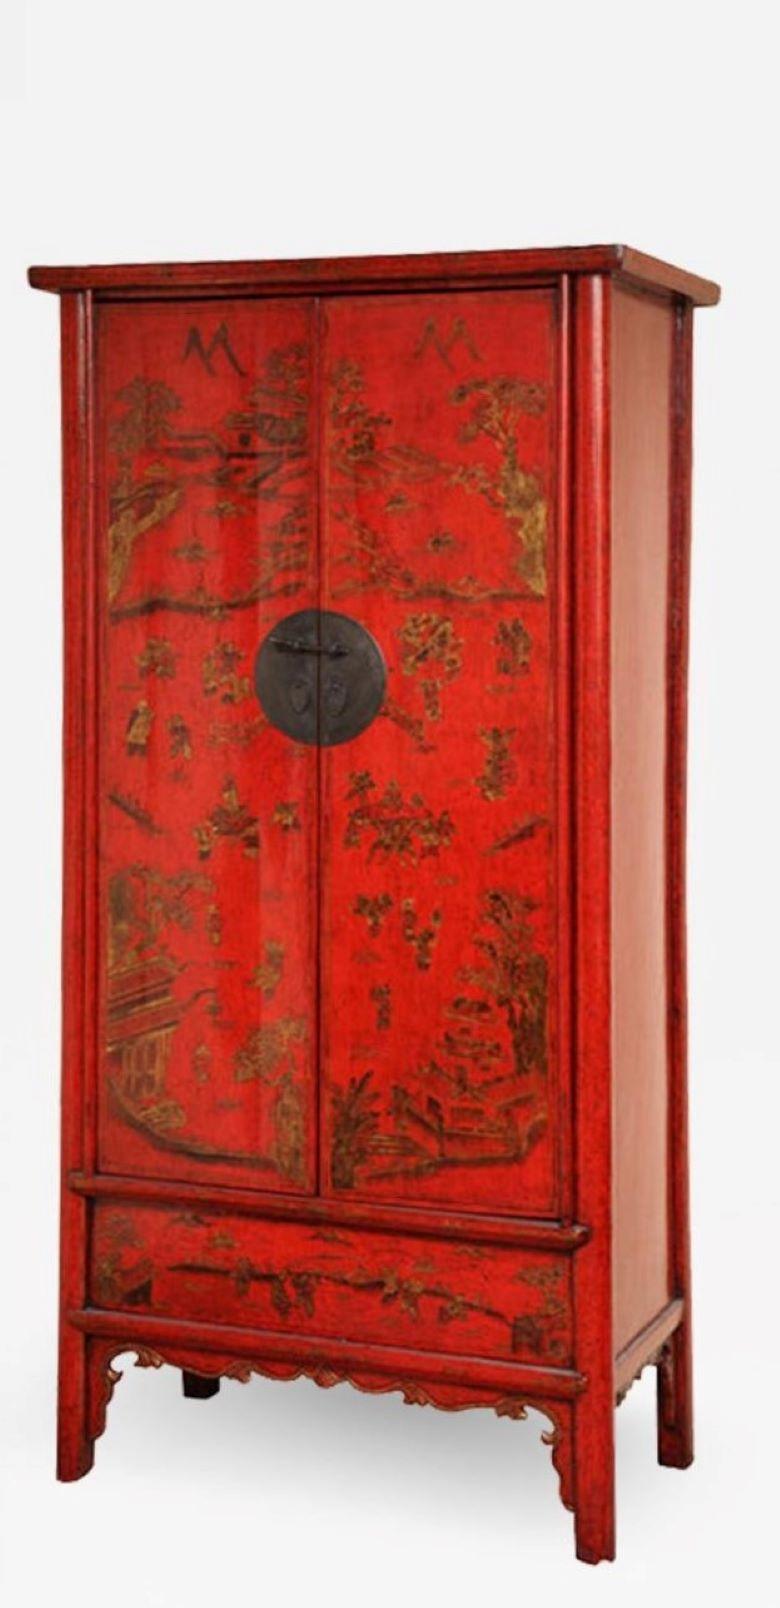 Très belles armoires chinoises à deux portes laquées rouges du 19e siècle, avec décor de Chinoiserie. Intérieur aménagé avec une étagère, deux tiroirs et un compartiment dissimulé. Cette pièce importante ajoutera de la couleur et de la hauteur à un